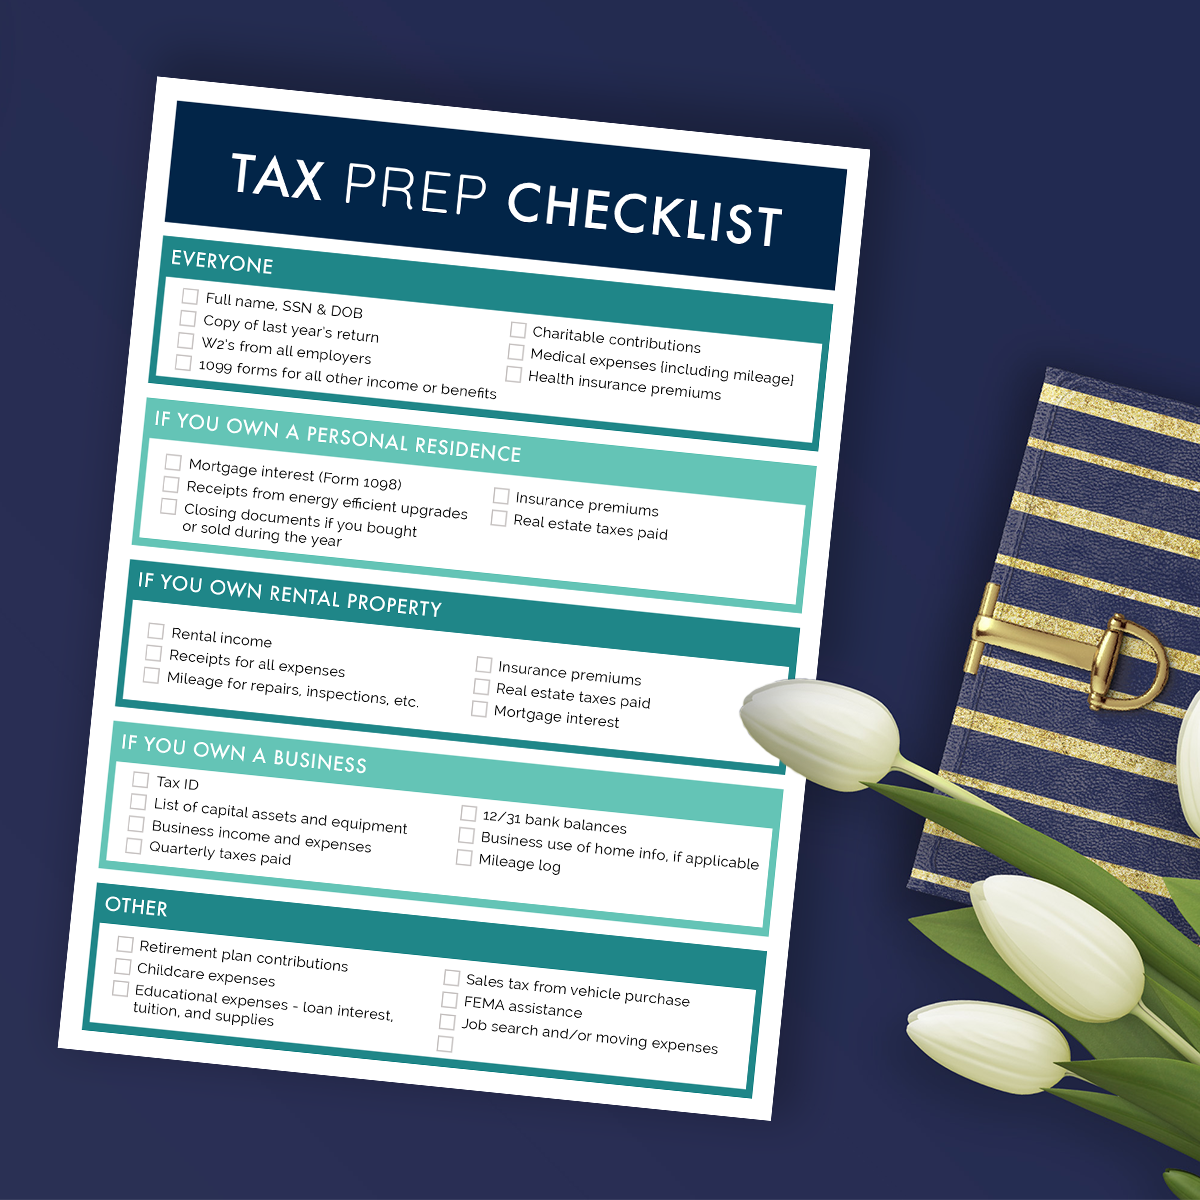 The Ultimate Tax Prep Checklist